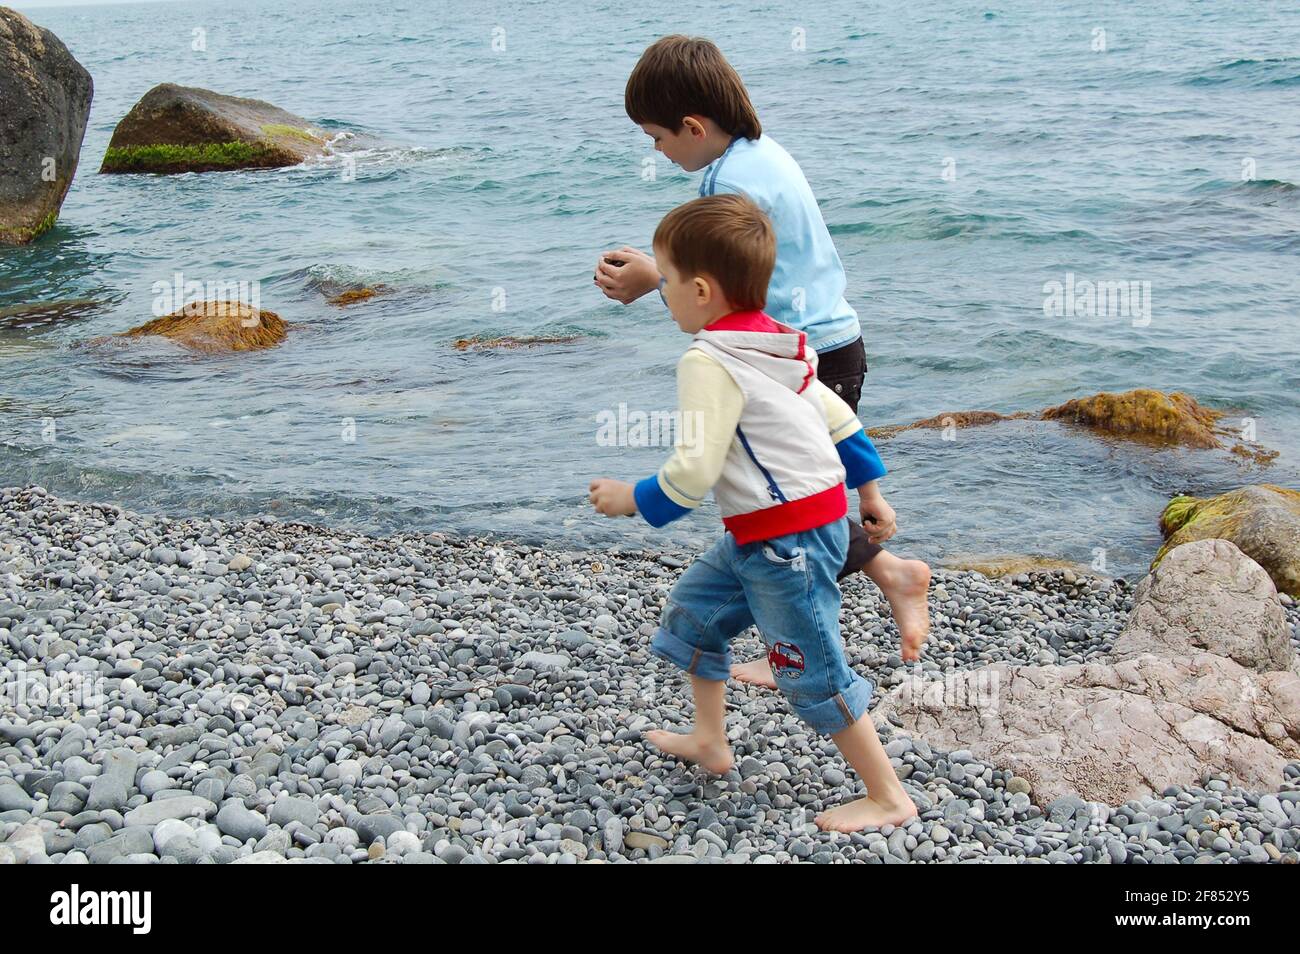 Yalta, Ucrania - 03.05.2009: Los niños corren a lo largo de la orilla del mar. A los niños les encanta jugar con piedras en la playa de guijarros. Foto de stock